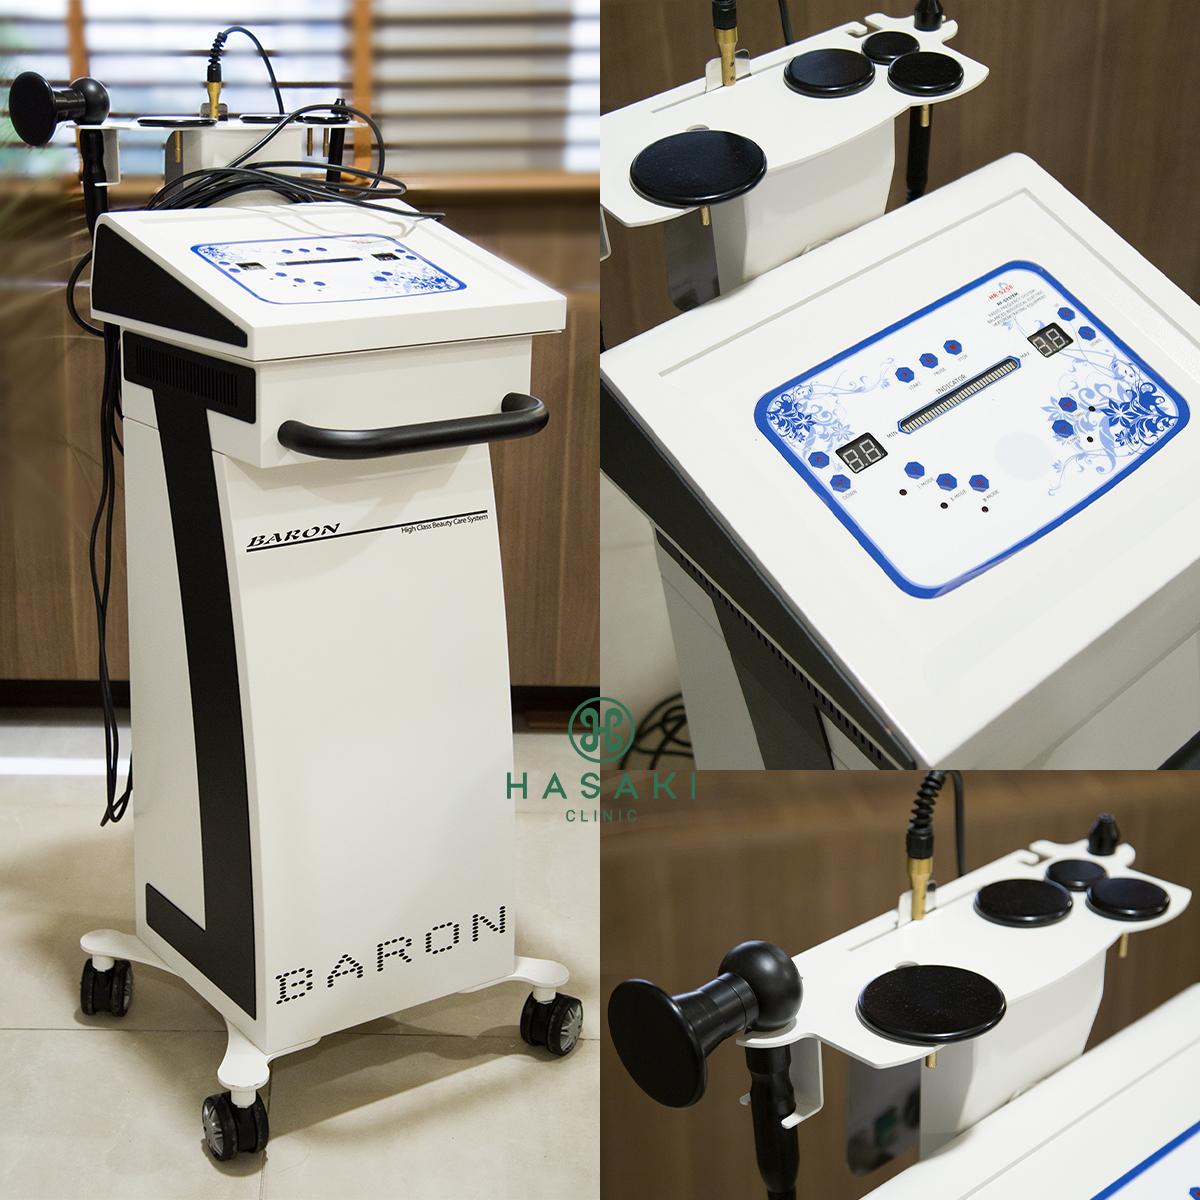 Máy RF Baron nhập khẩu 100% chính hãng tại Hasaki Clinic